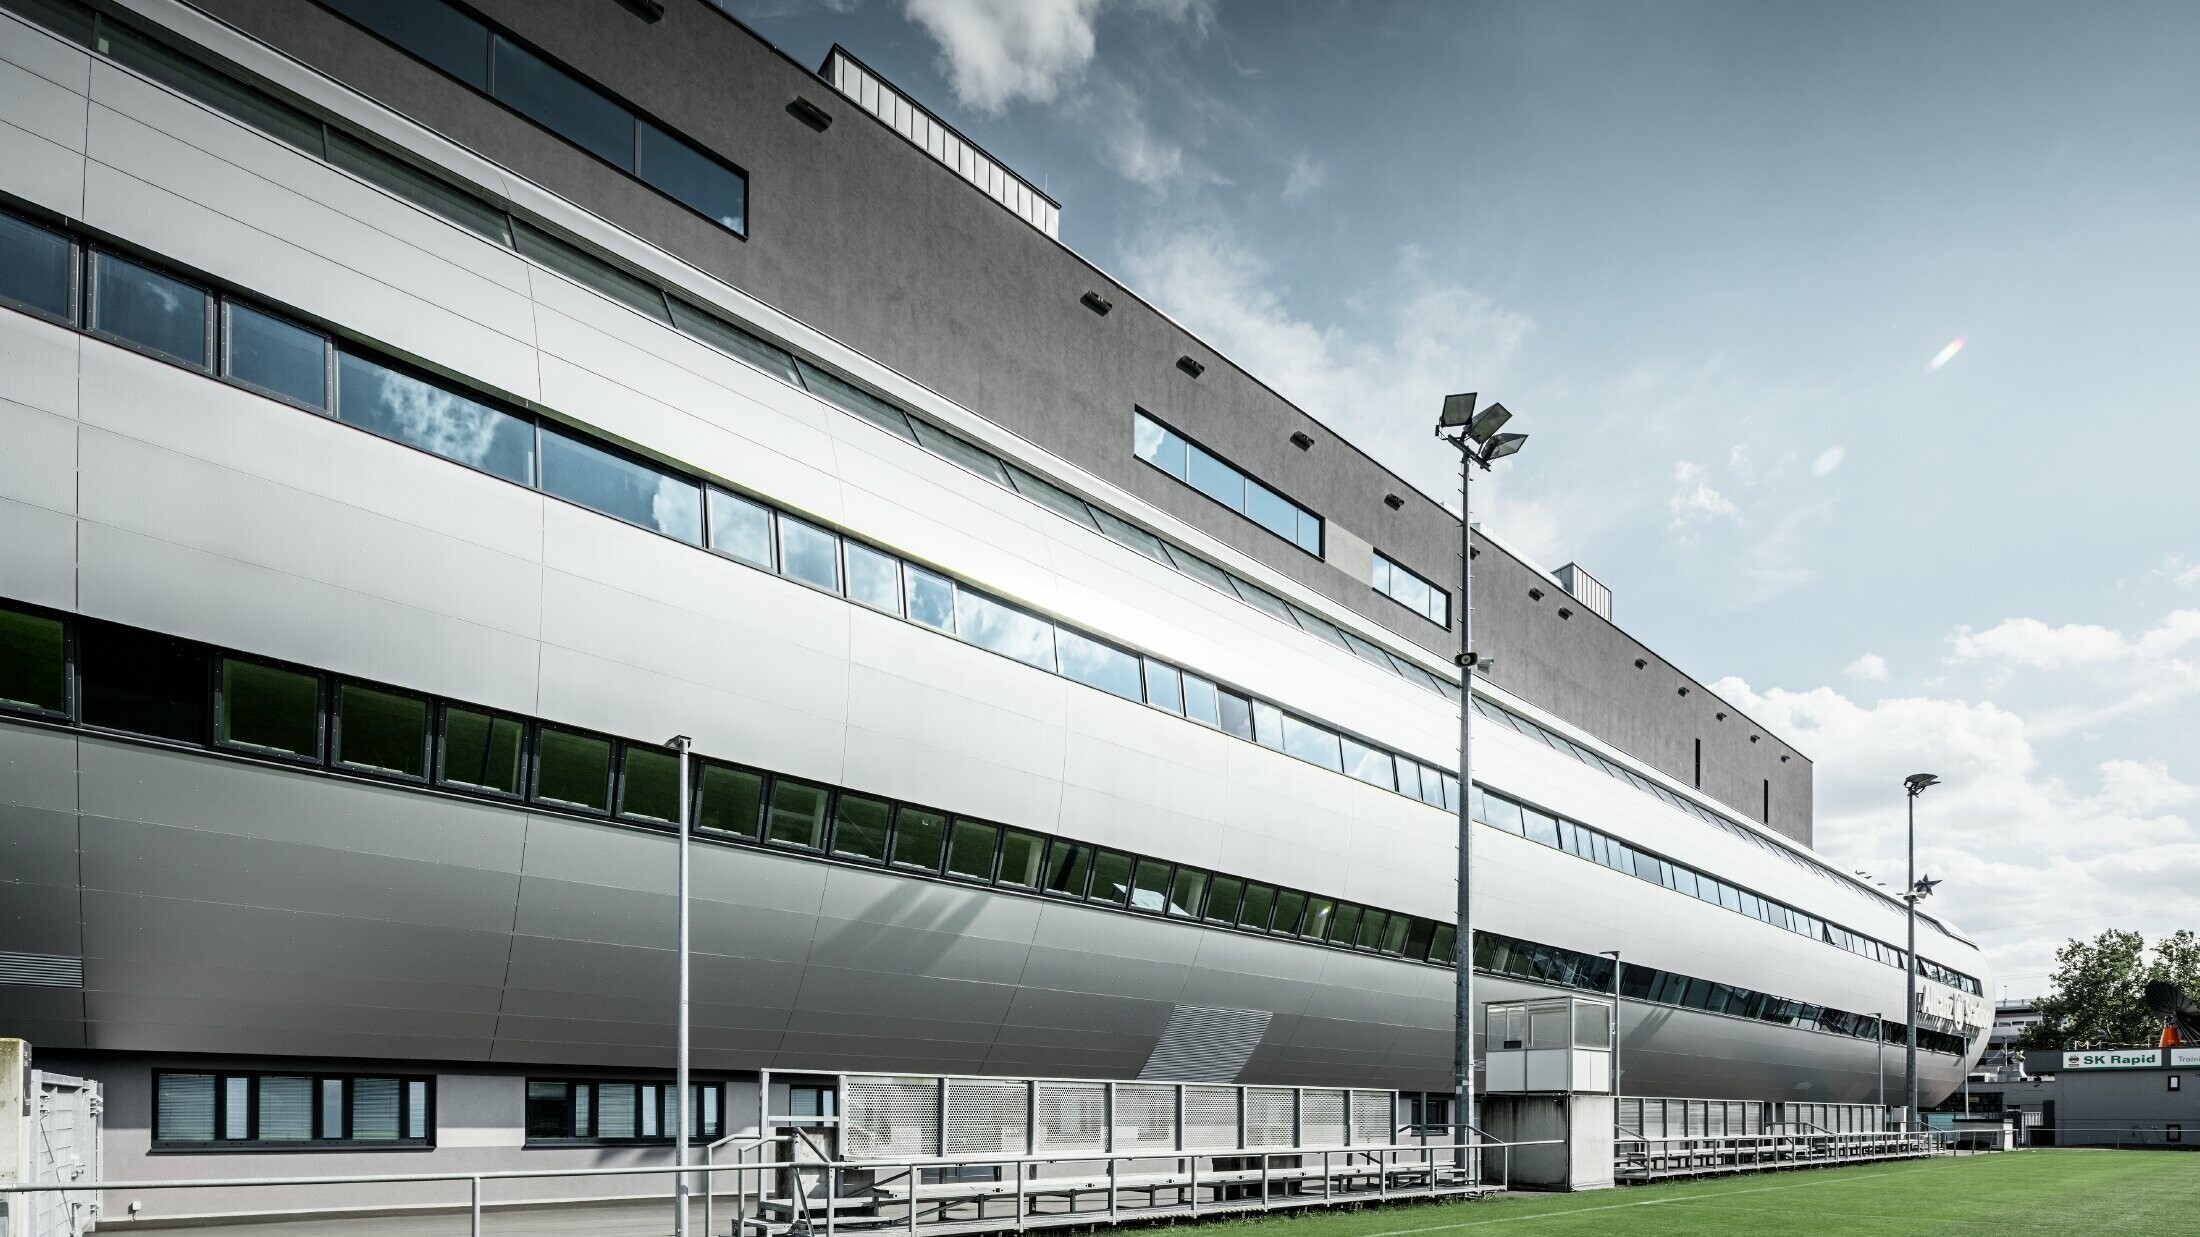 Pohled na stadion Allianz ve Vídni z tréninkového hřiště. Tubus vede do útrob stadionu je pokryt hliníkovým kompozitním panelem PREFABOND ve stříbrné metalíze.